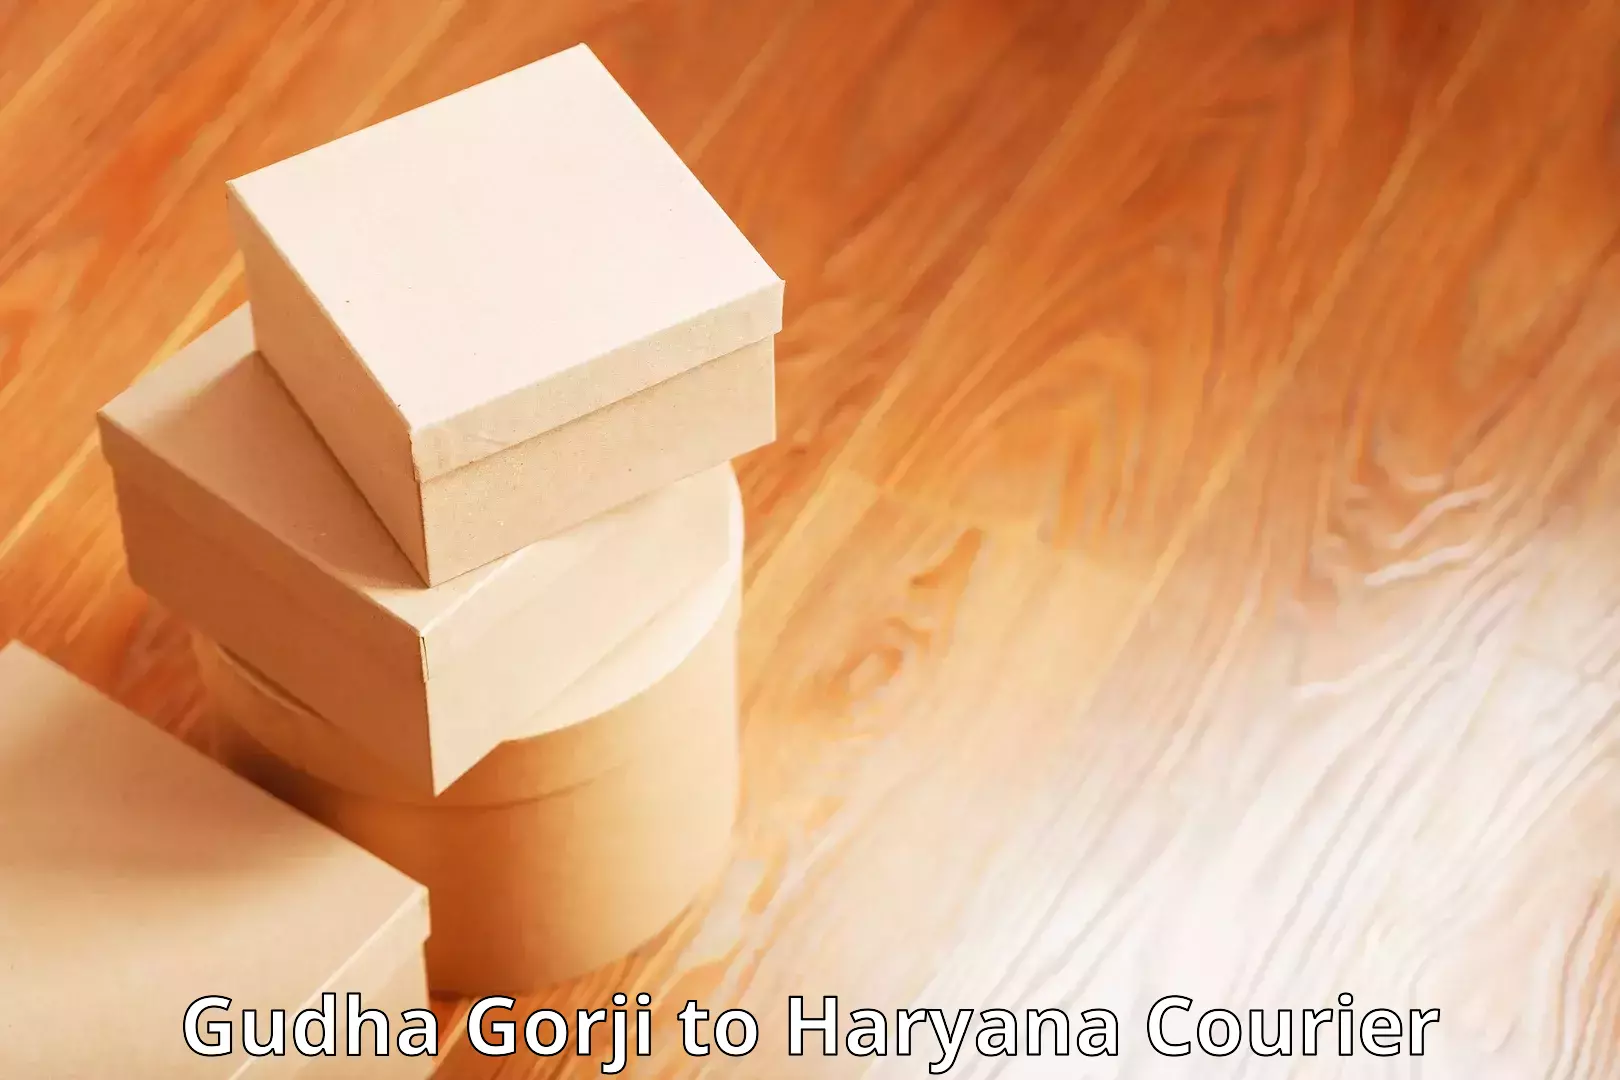 Global courier networks Gudha Gorji to Gurgaon